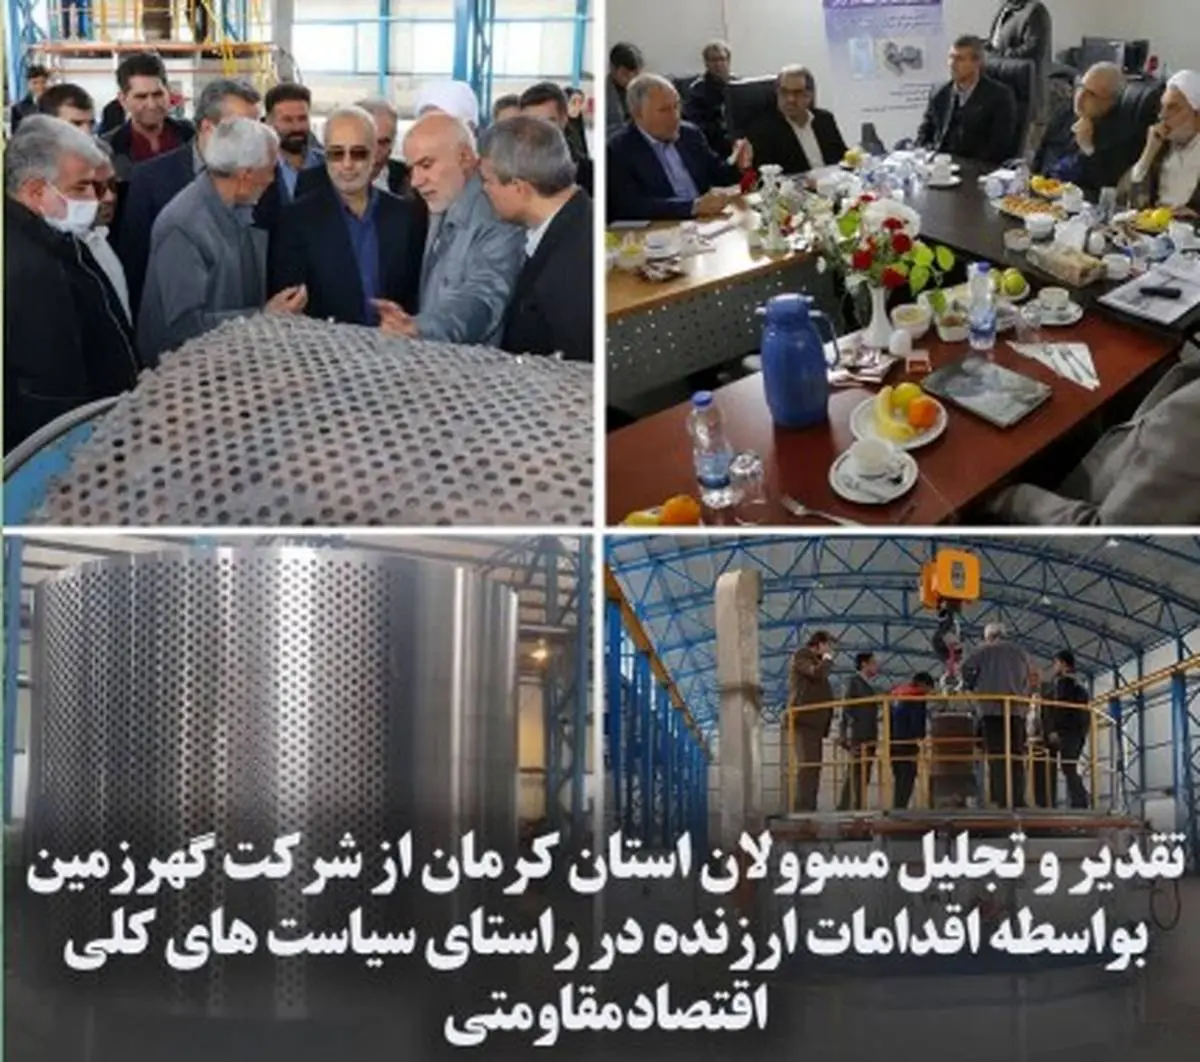 تقدیر و تجلیل مسوولان استان کرمان از شرکت گهرزمین بواسطه اقدامات ارزنده